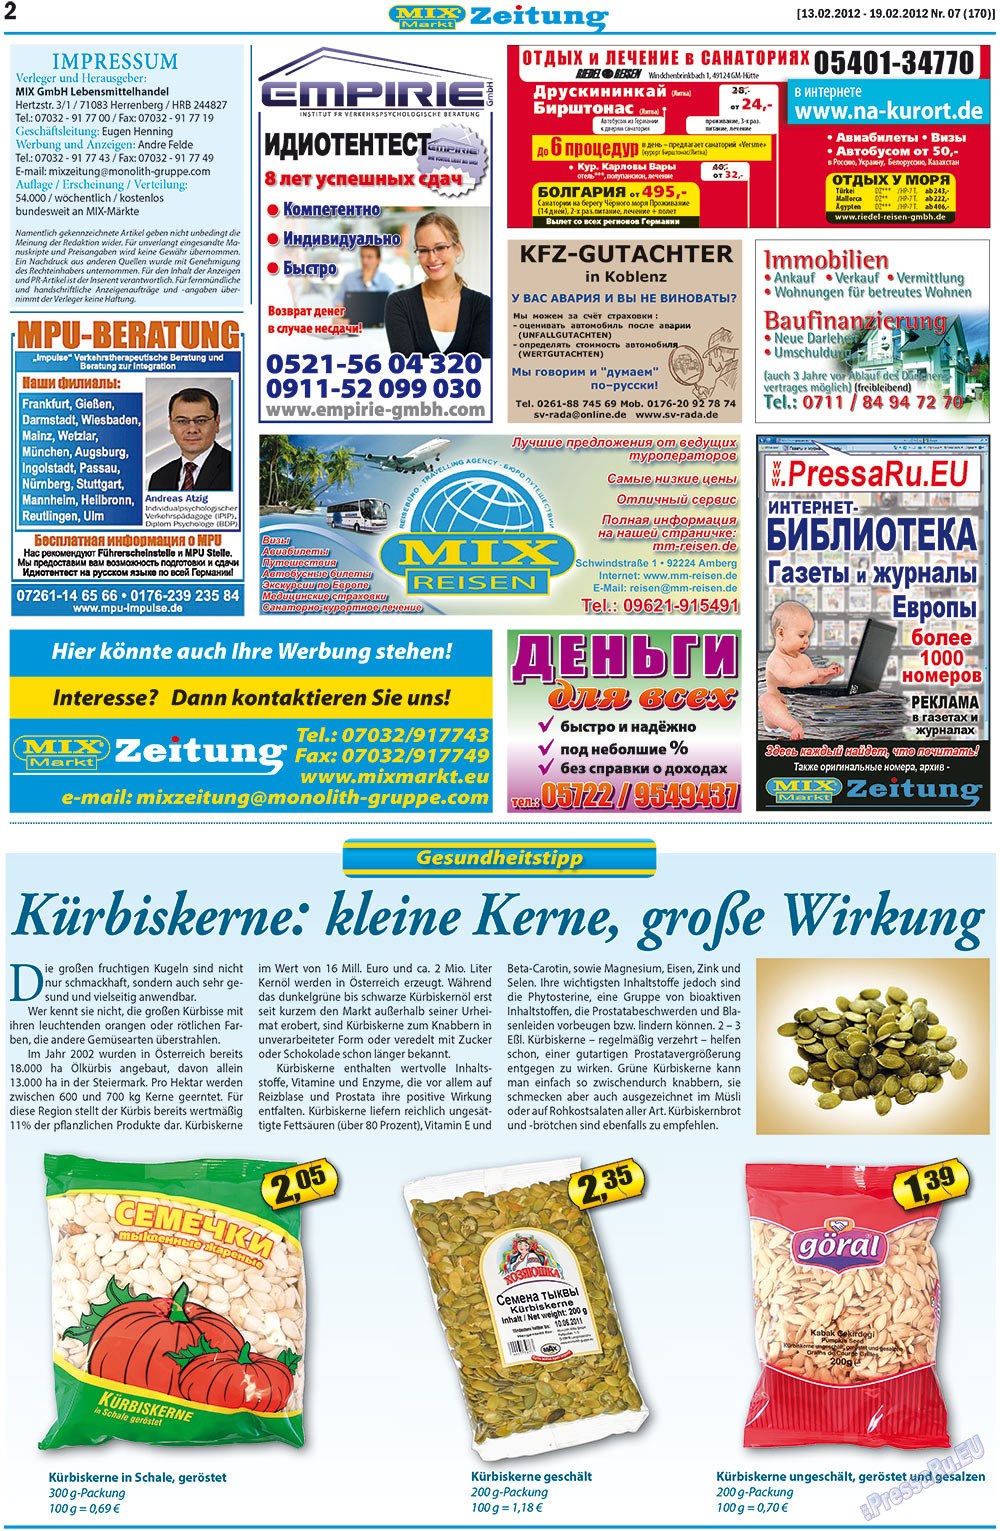 MIX-Markt Zeitung (газета). 2012 год, номер 7, стр. 2